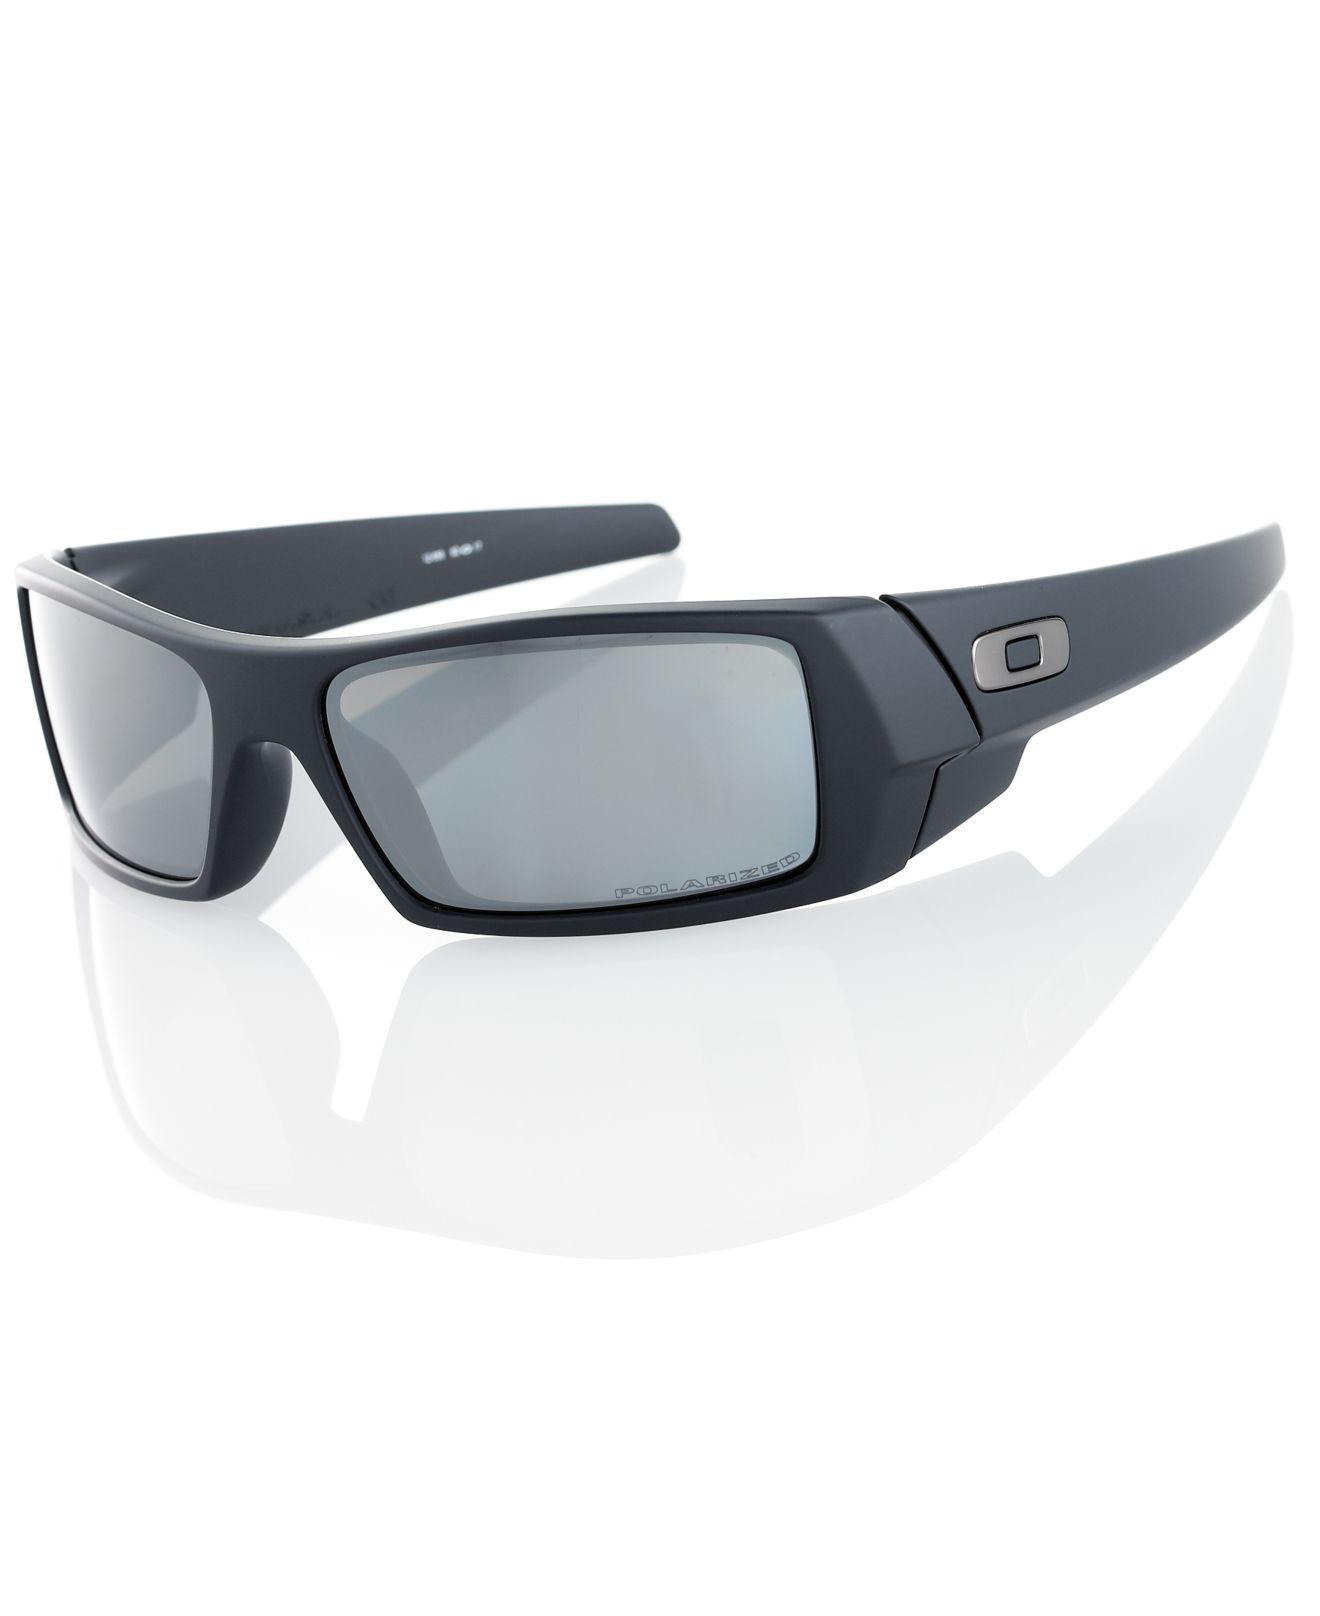 Lyst Oakley Sunglasses Gascan In Black For Men 